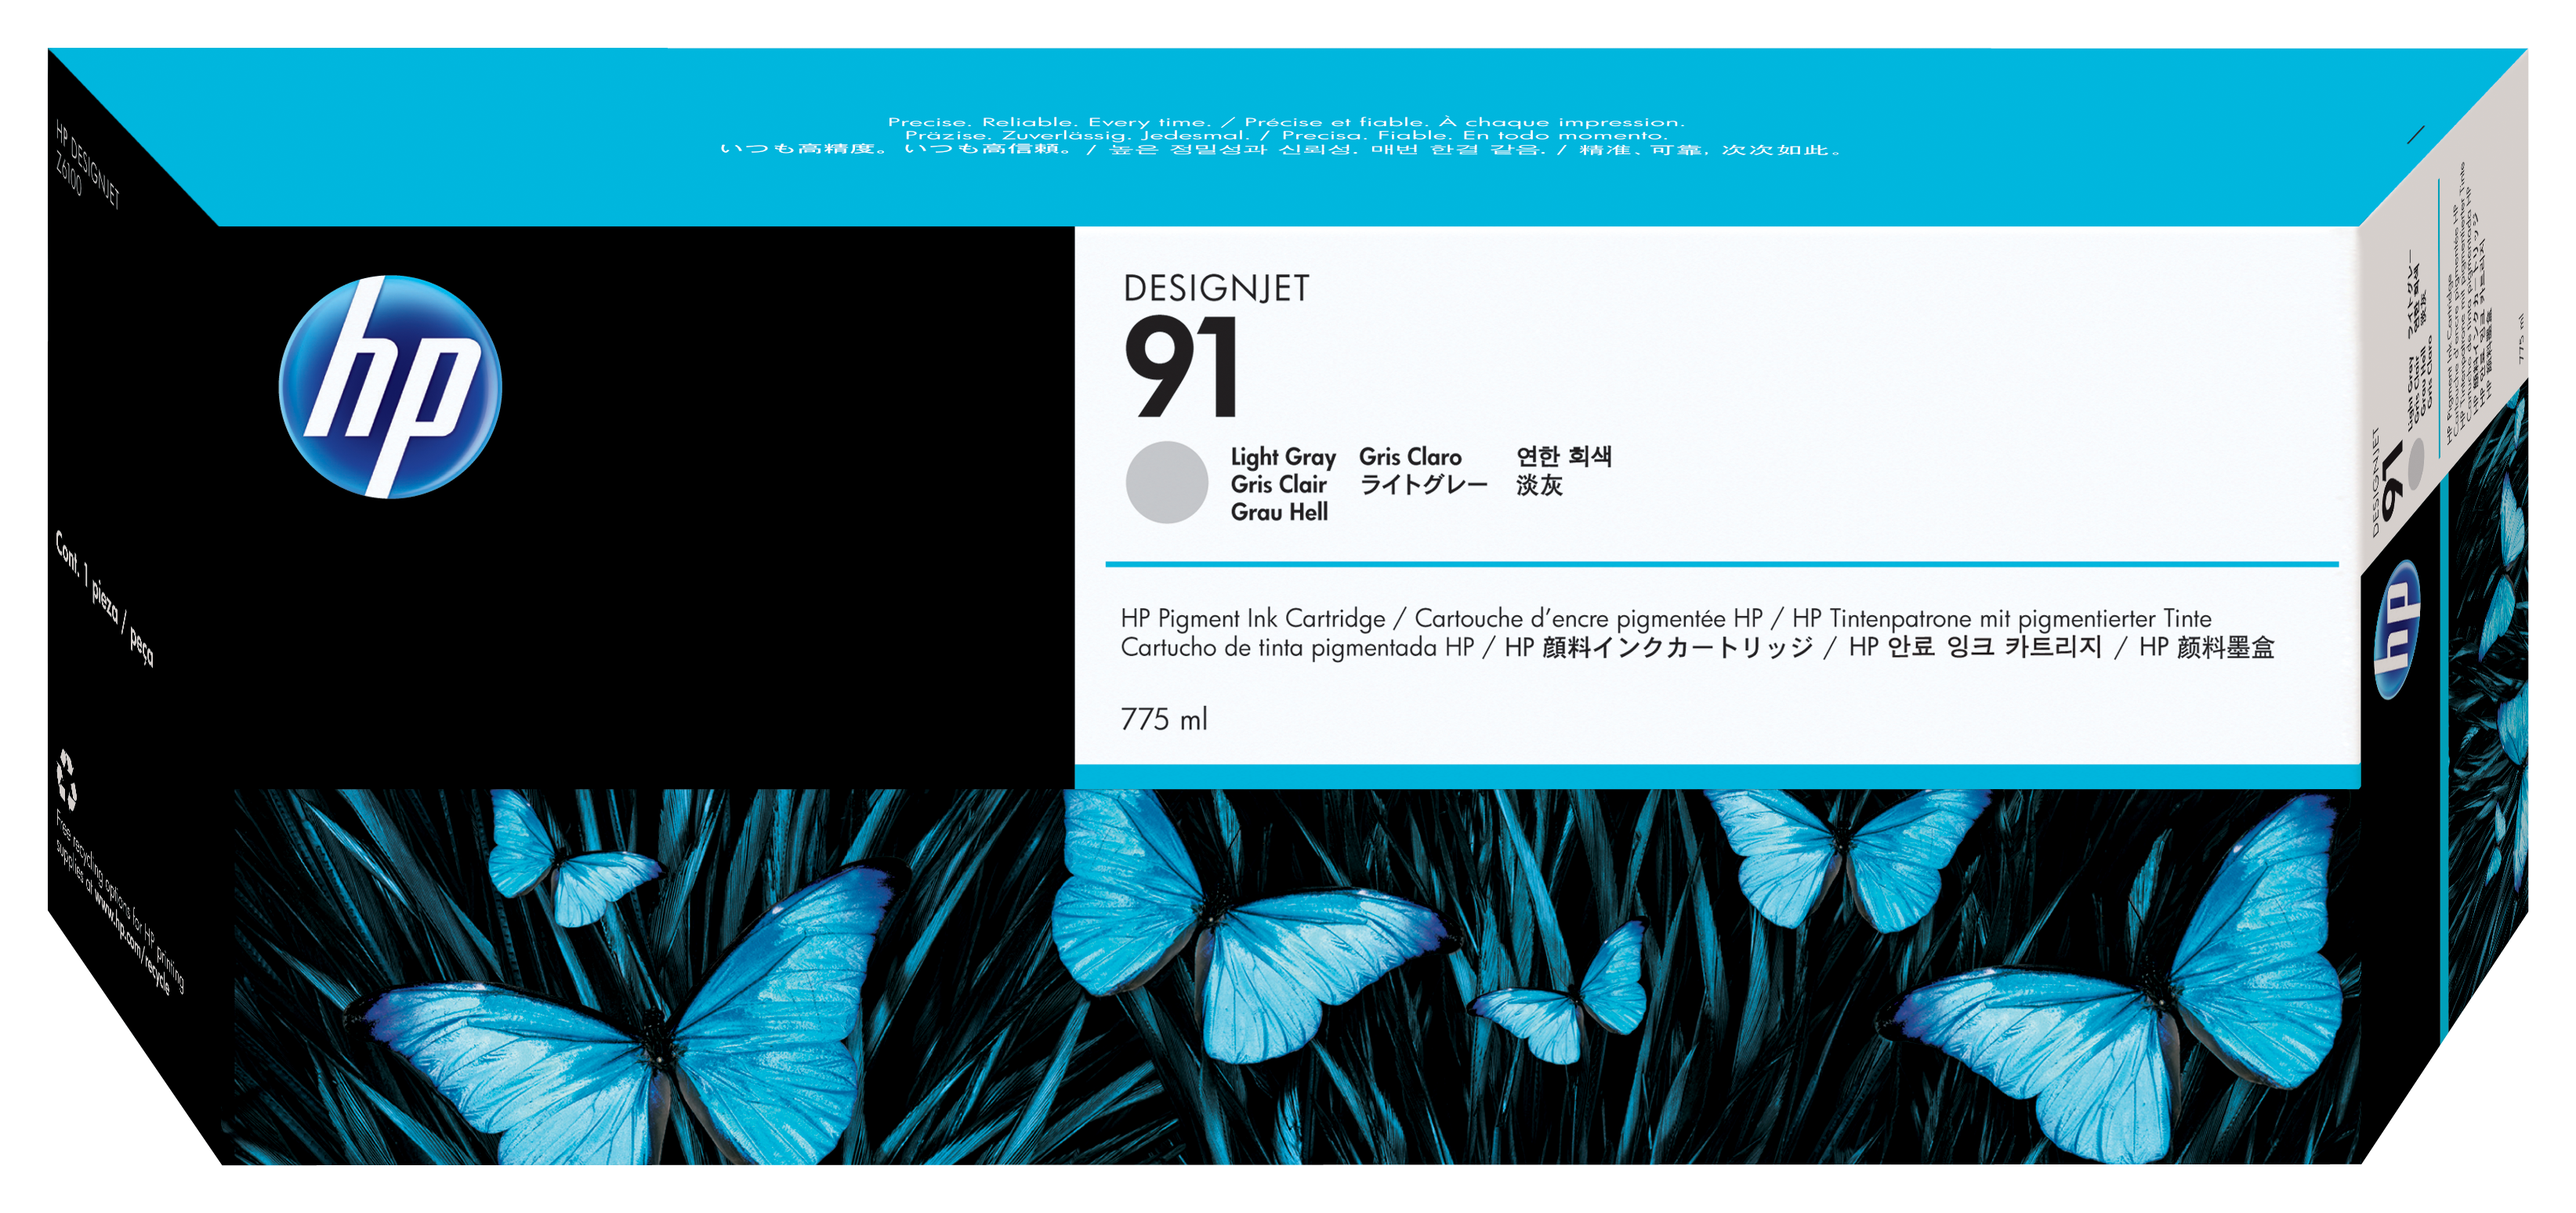 HP 91 775 ml pigmentinktcartridges voor DesignJet, lichtgrijs single pack / licht grijs